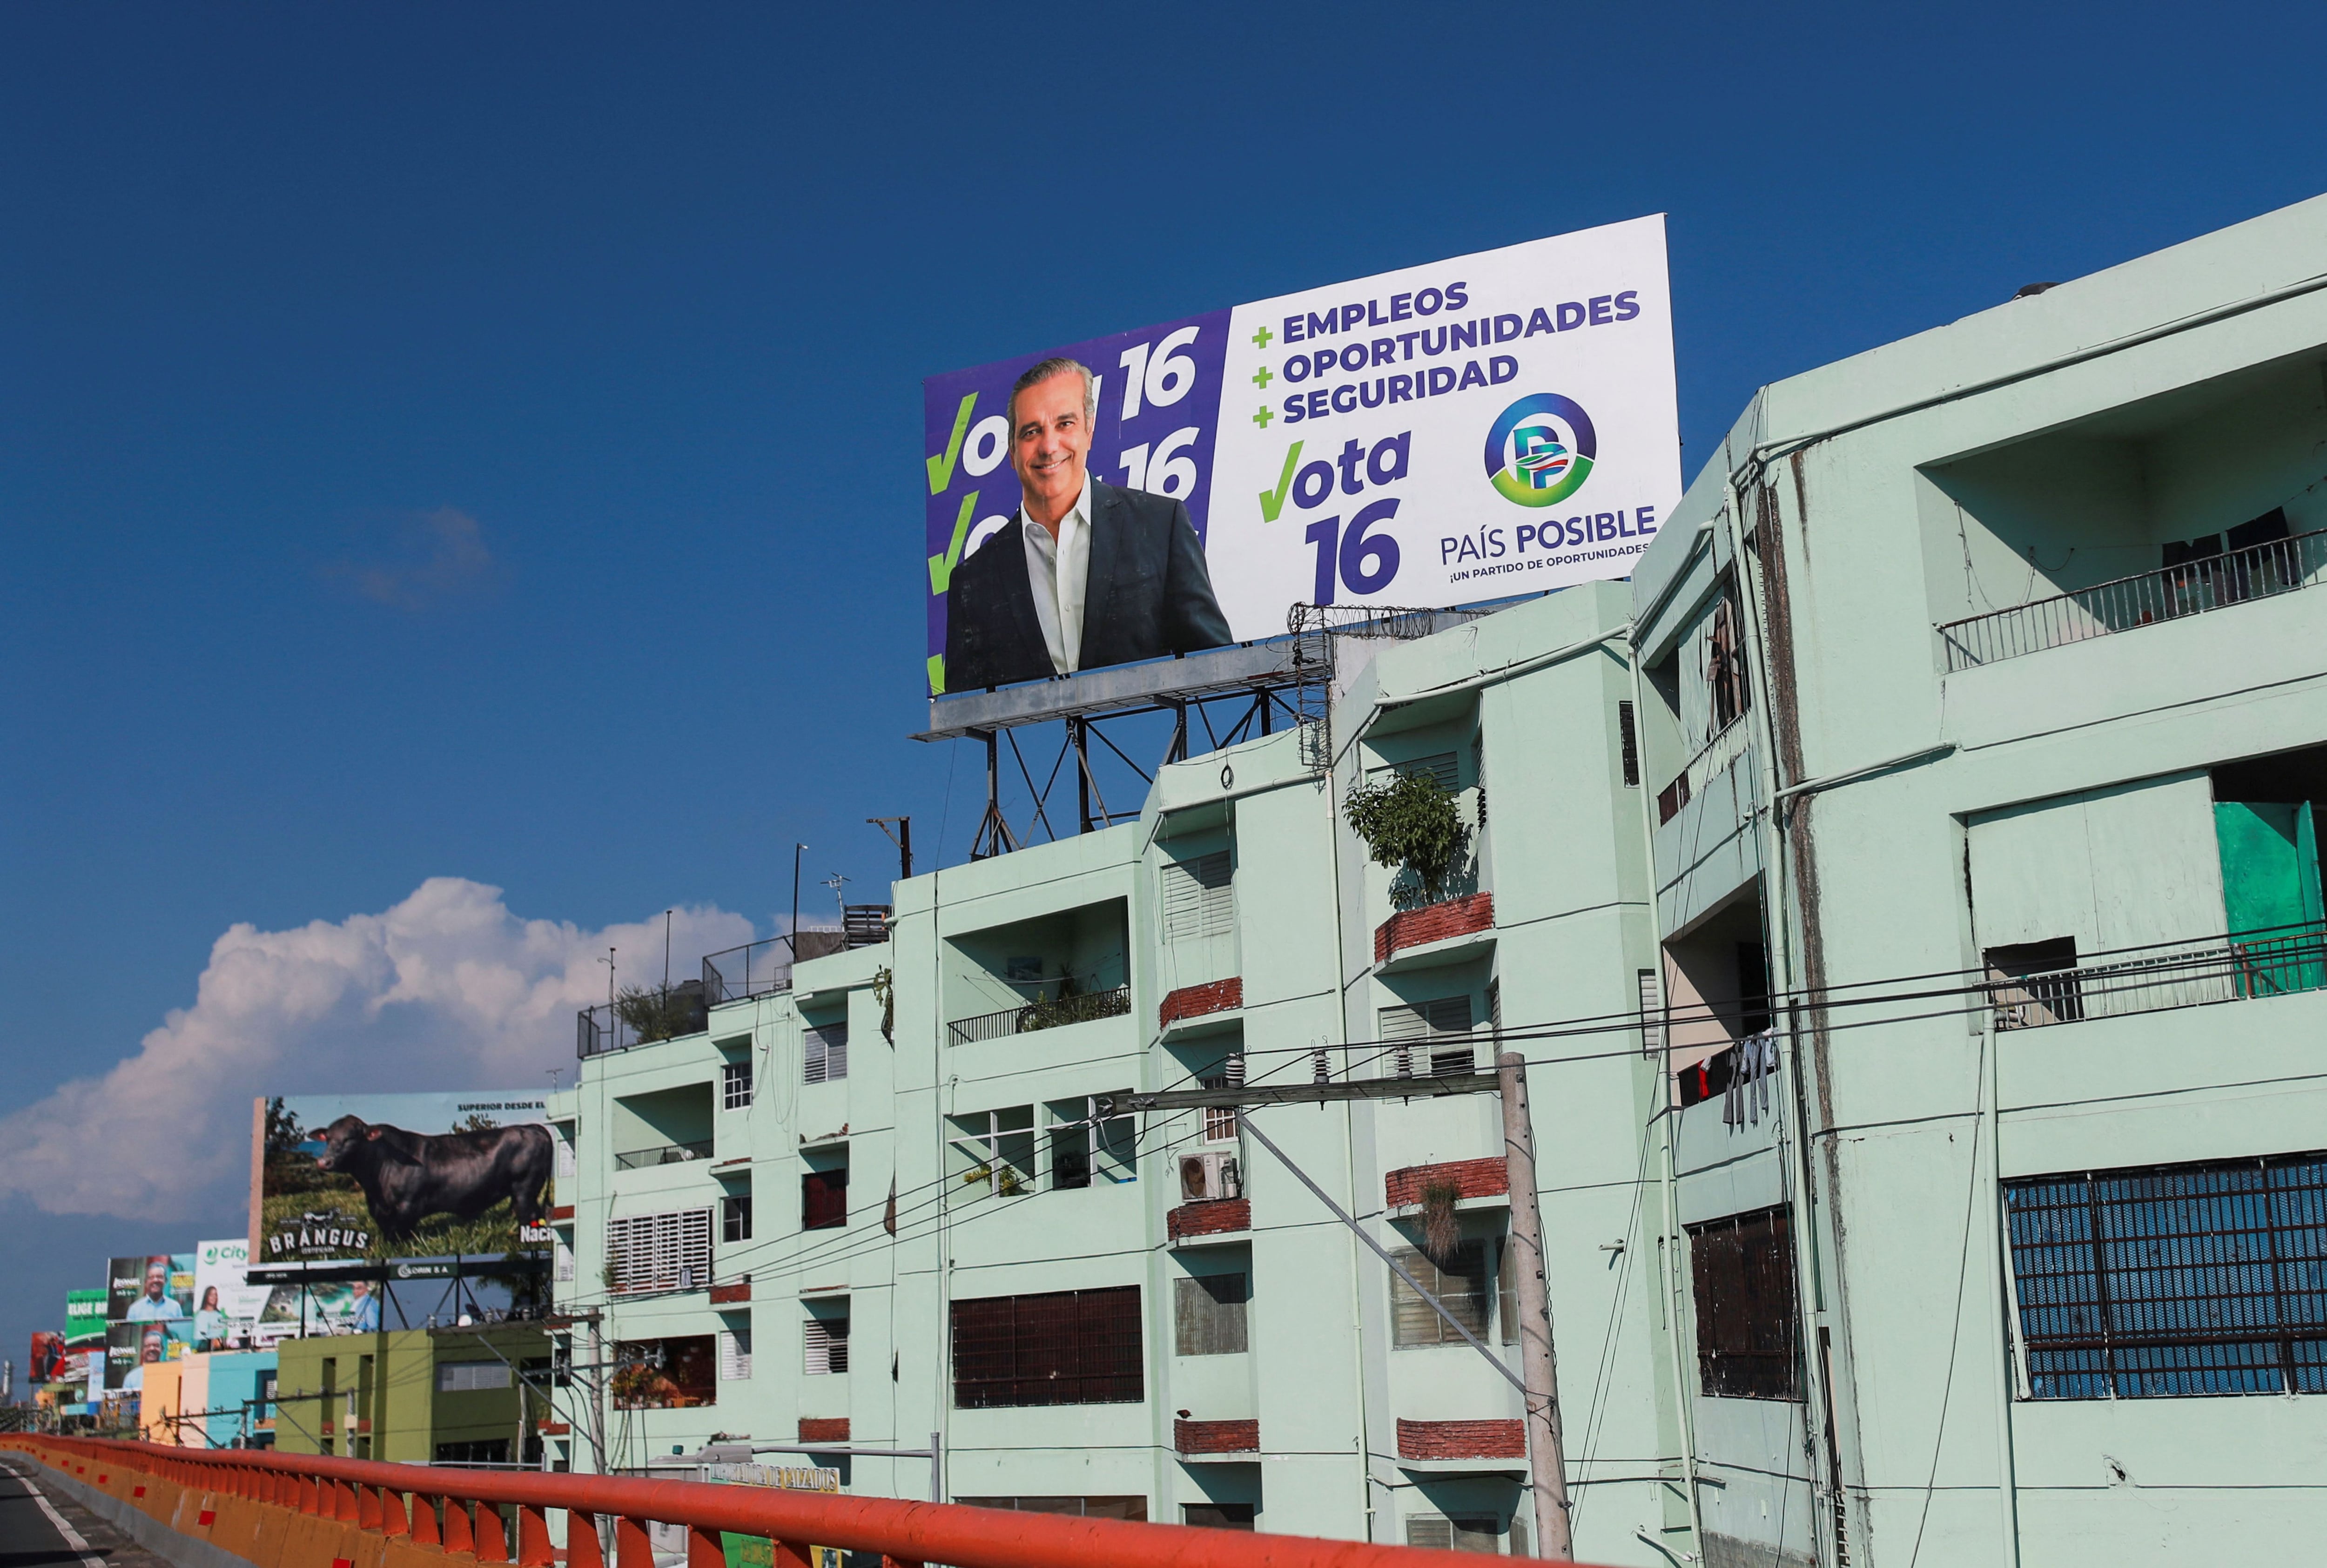 Vallas publicitarias del Presidente de la República Dominicana, Luis Abinader, candidato del Partido Revolucionario Moderno, en Santo Domingo (REUTERS/Henry Romer)